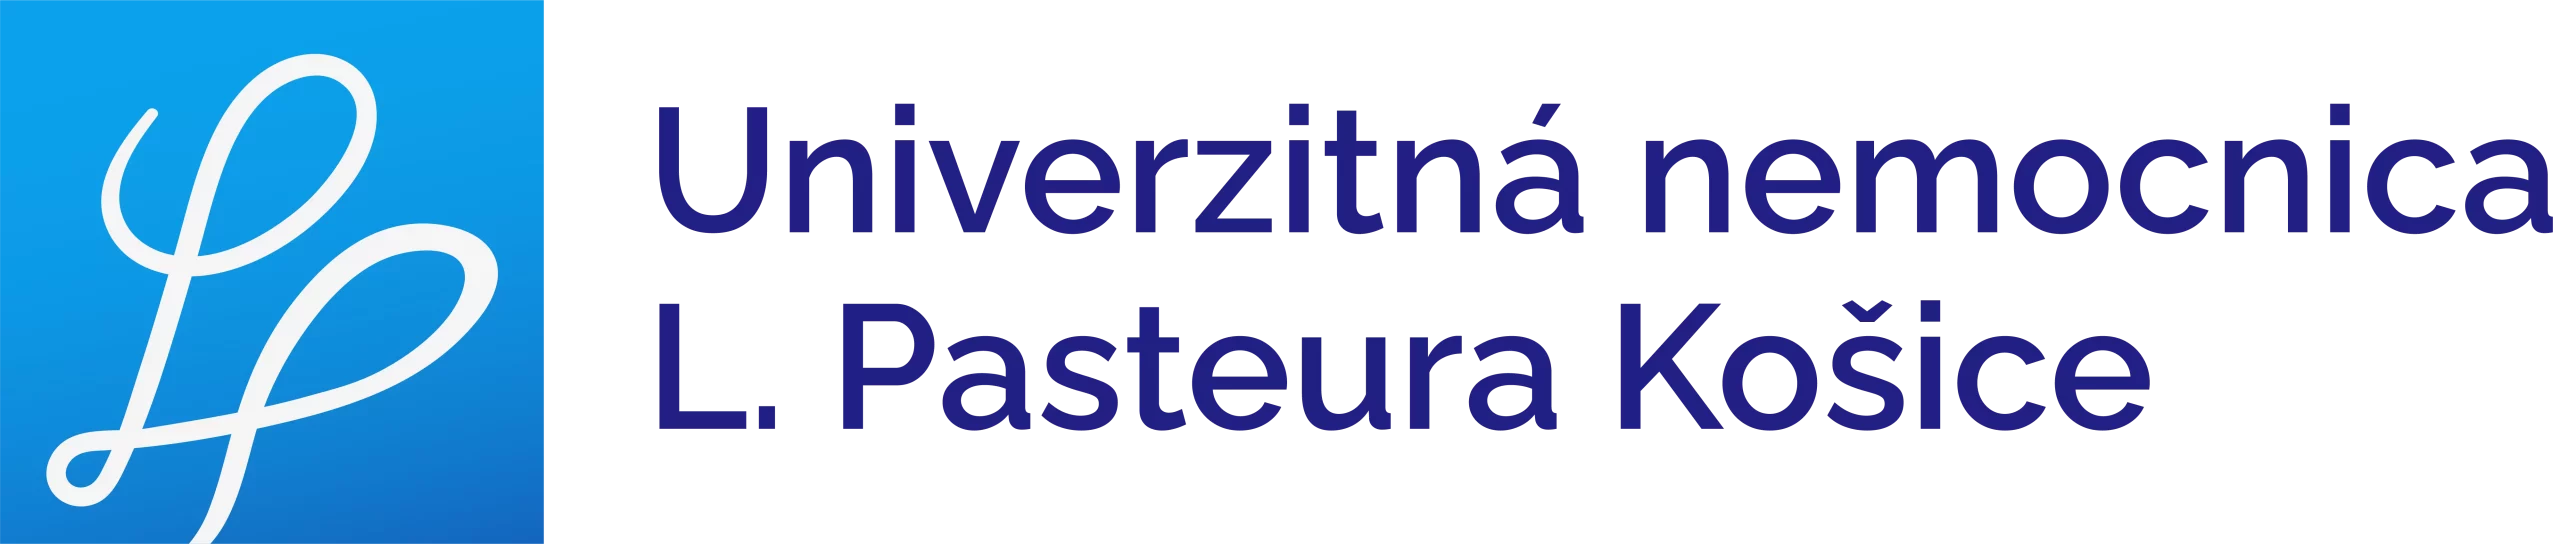 Univerzitná nemocnica L. Pasteura Košice logo